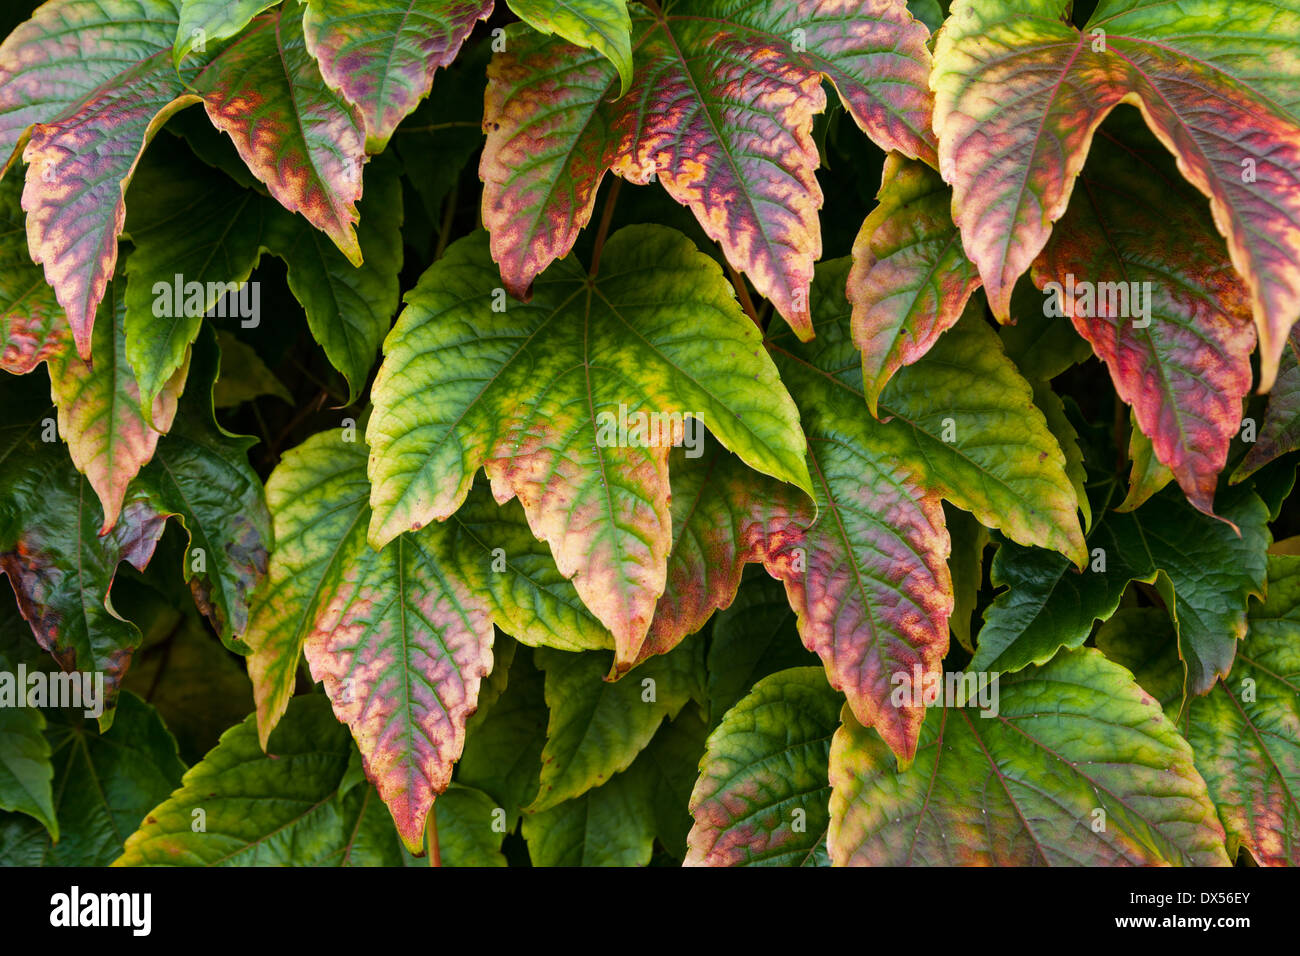 Colourful autum ivy leaves indicating the change of season,UK Stock Photo